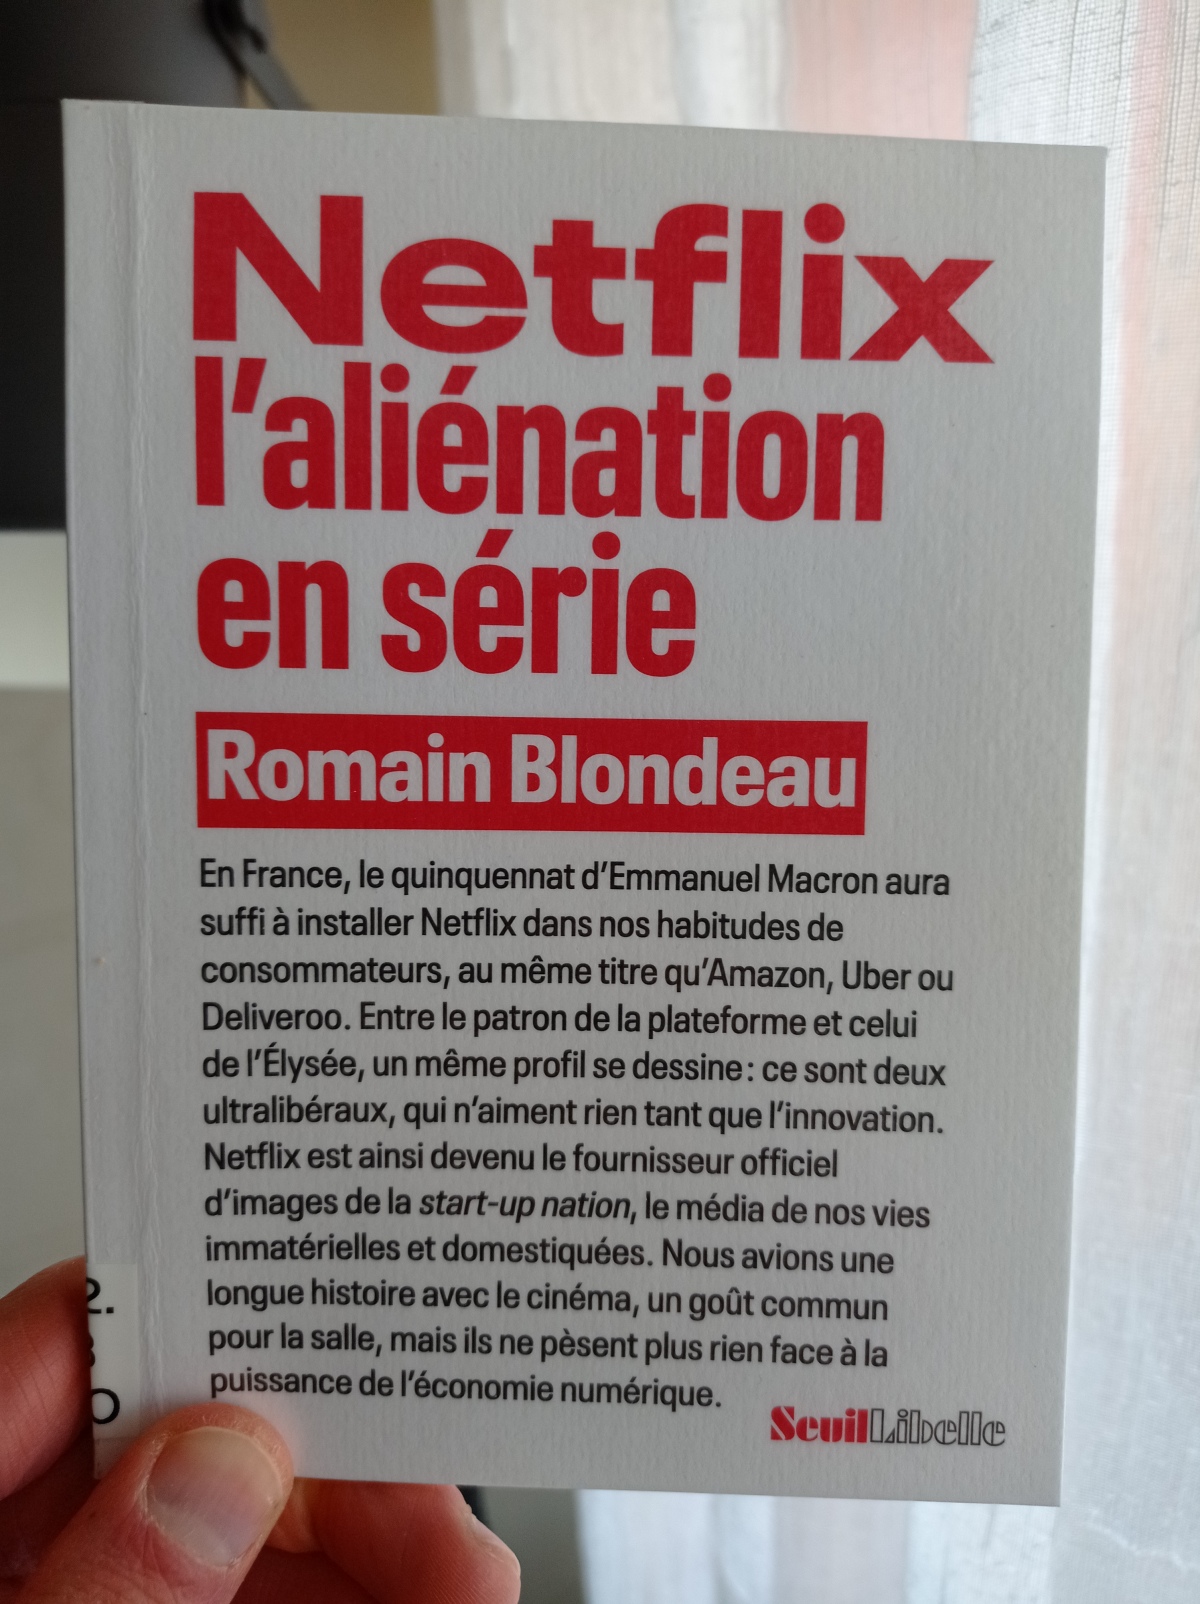 Netflix, l’aliénation en série / Romain Blondeau